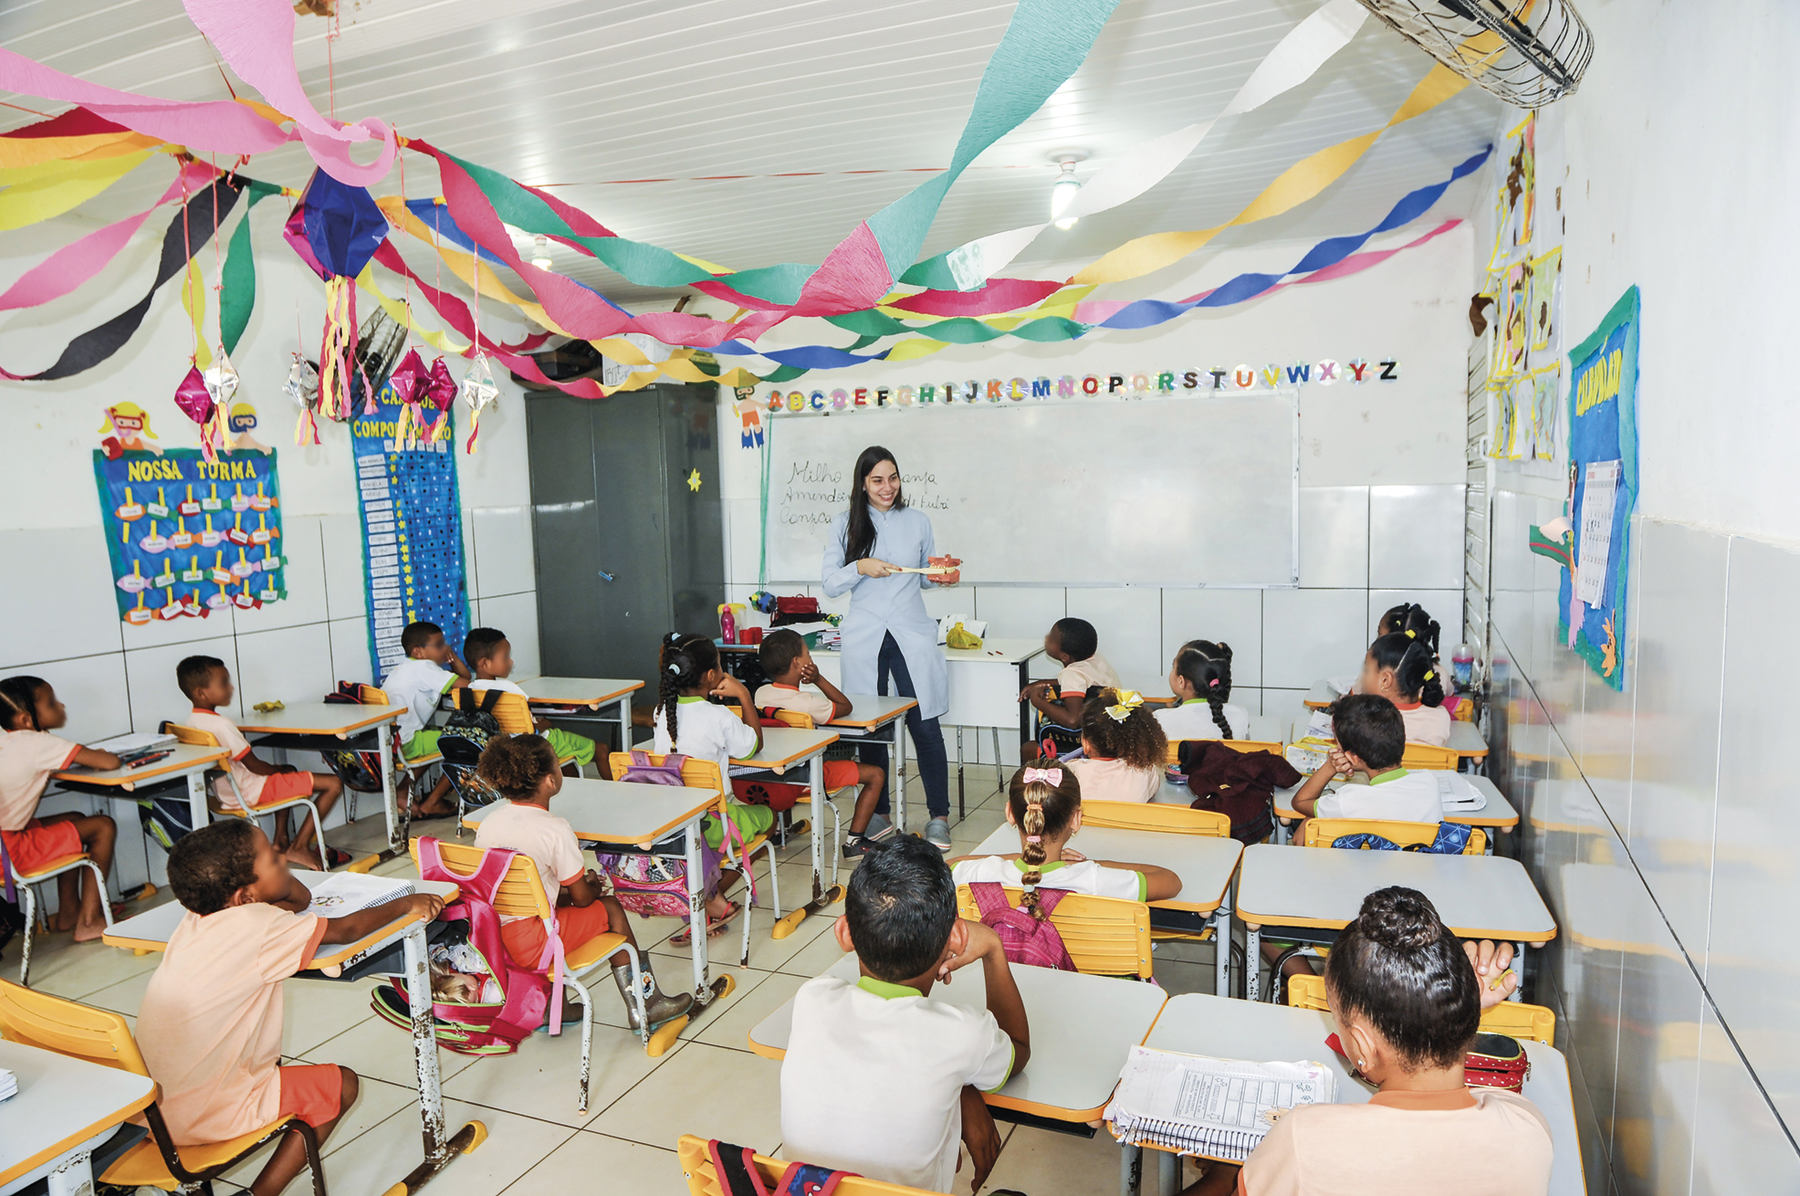 Fotografia. Sala de aula com crianças sentadas em carteiras escolares. Ao fundo, uma professora manuseando um objeto e atrás dela, uma lousa. Há bandeirinhas e um balão pendurados no teto.